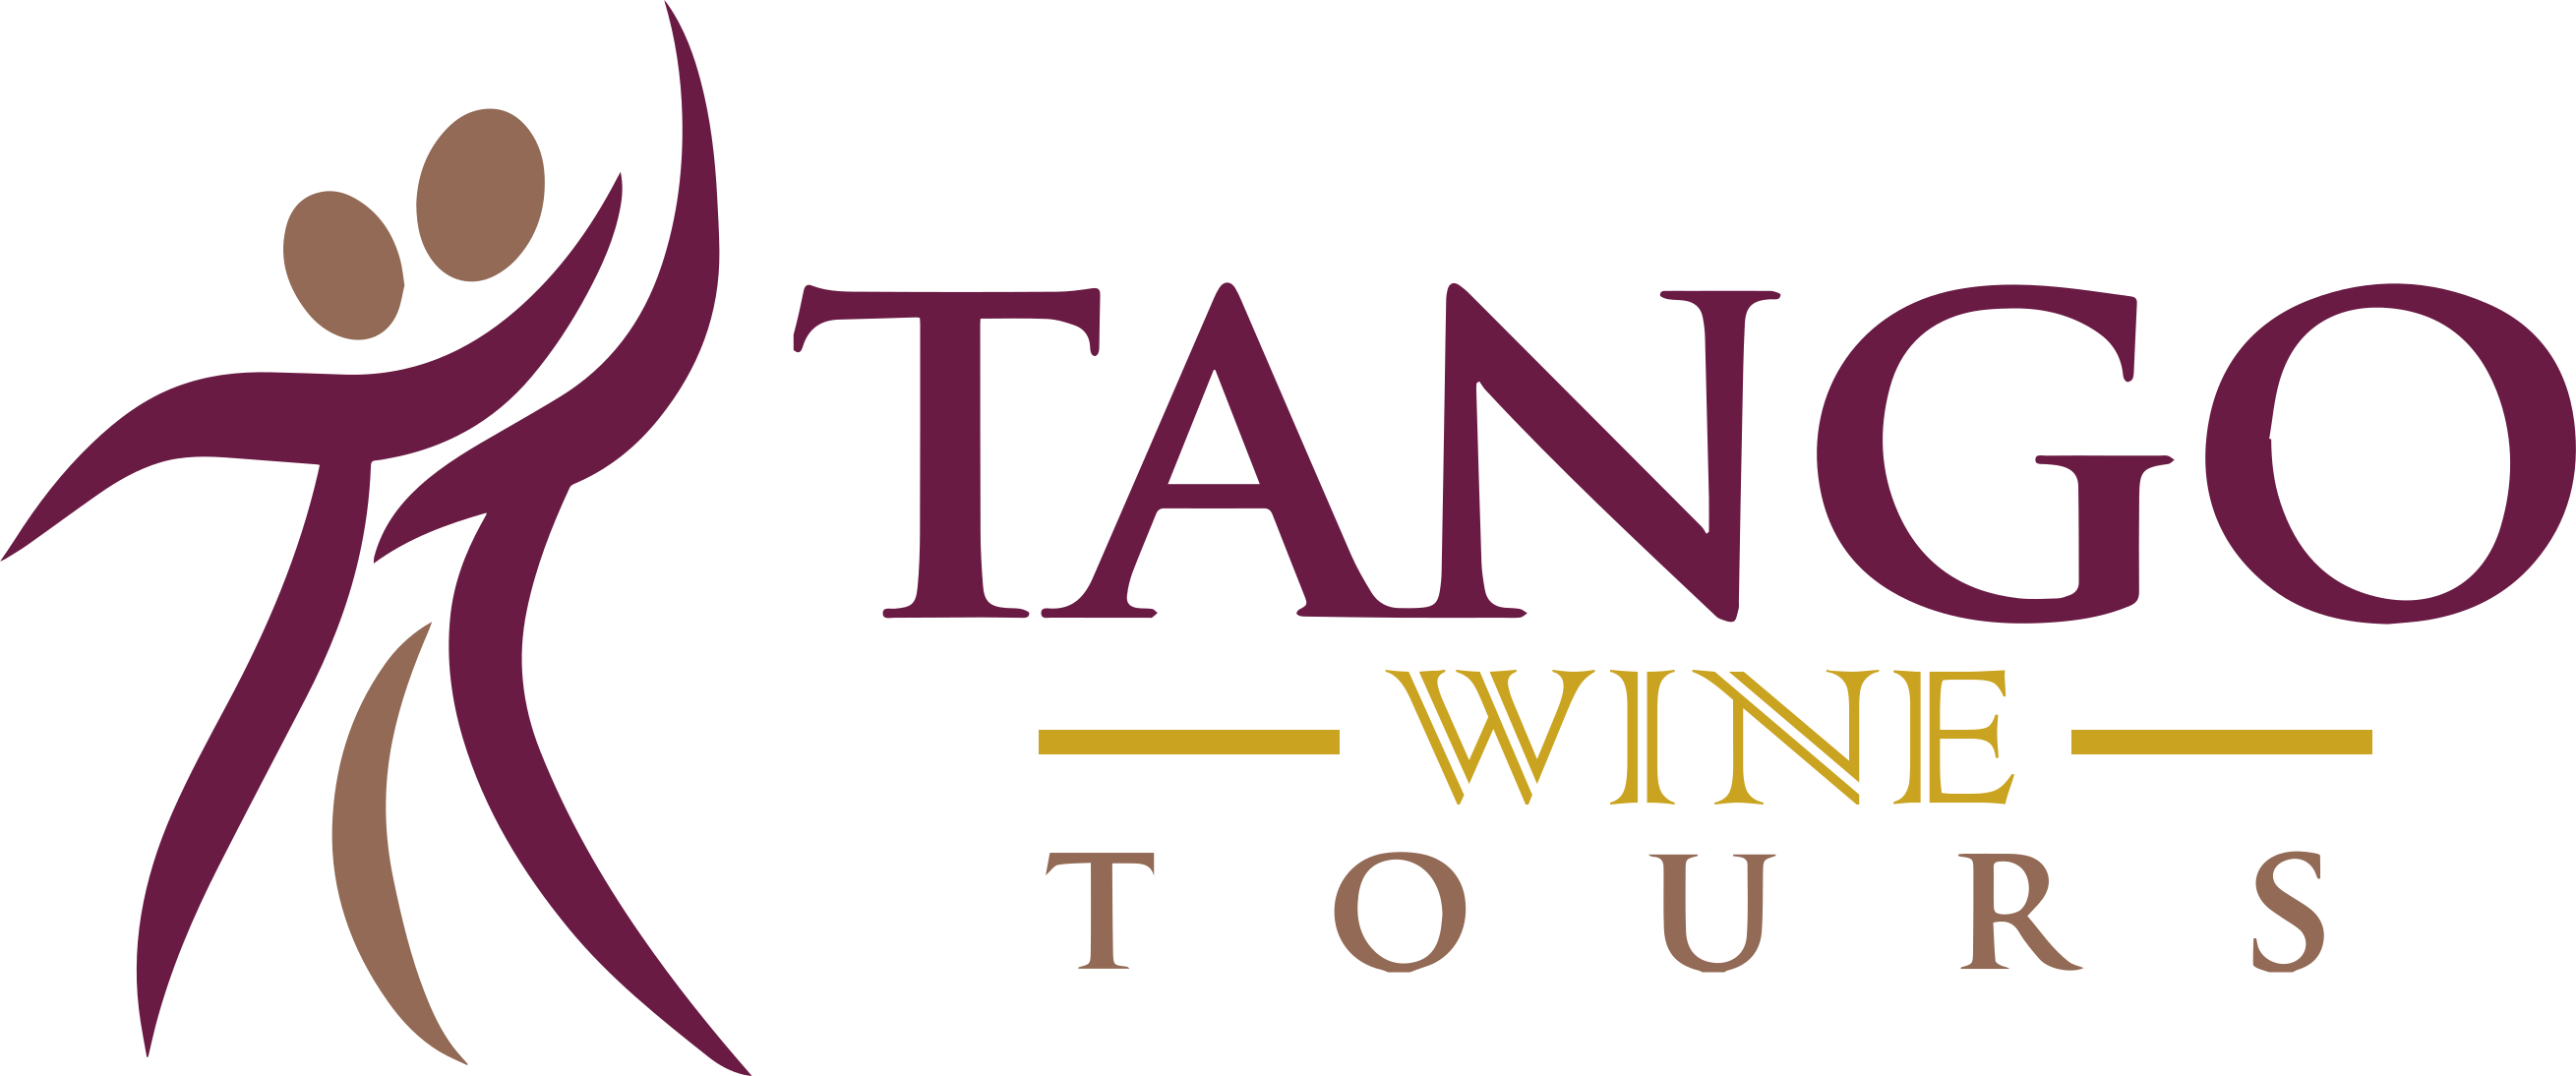 Tango Tours